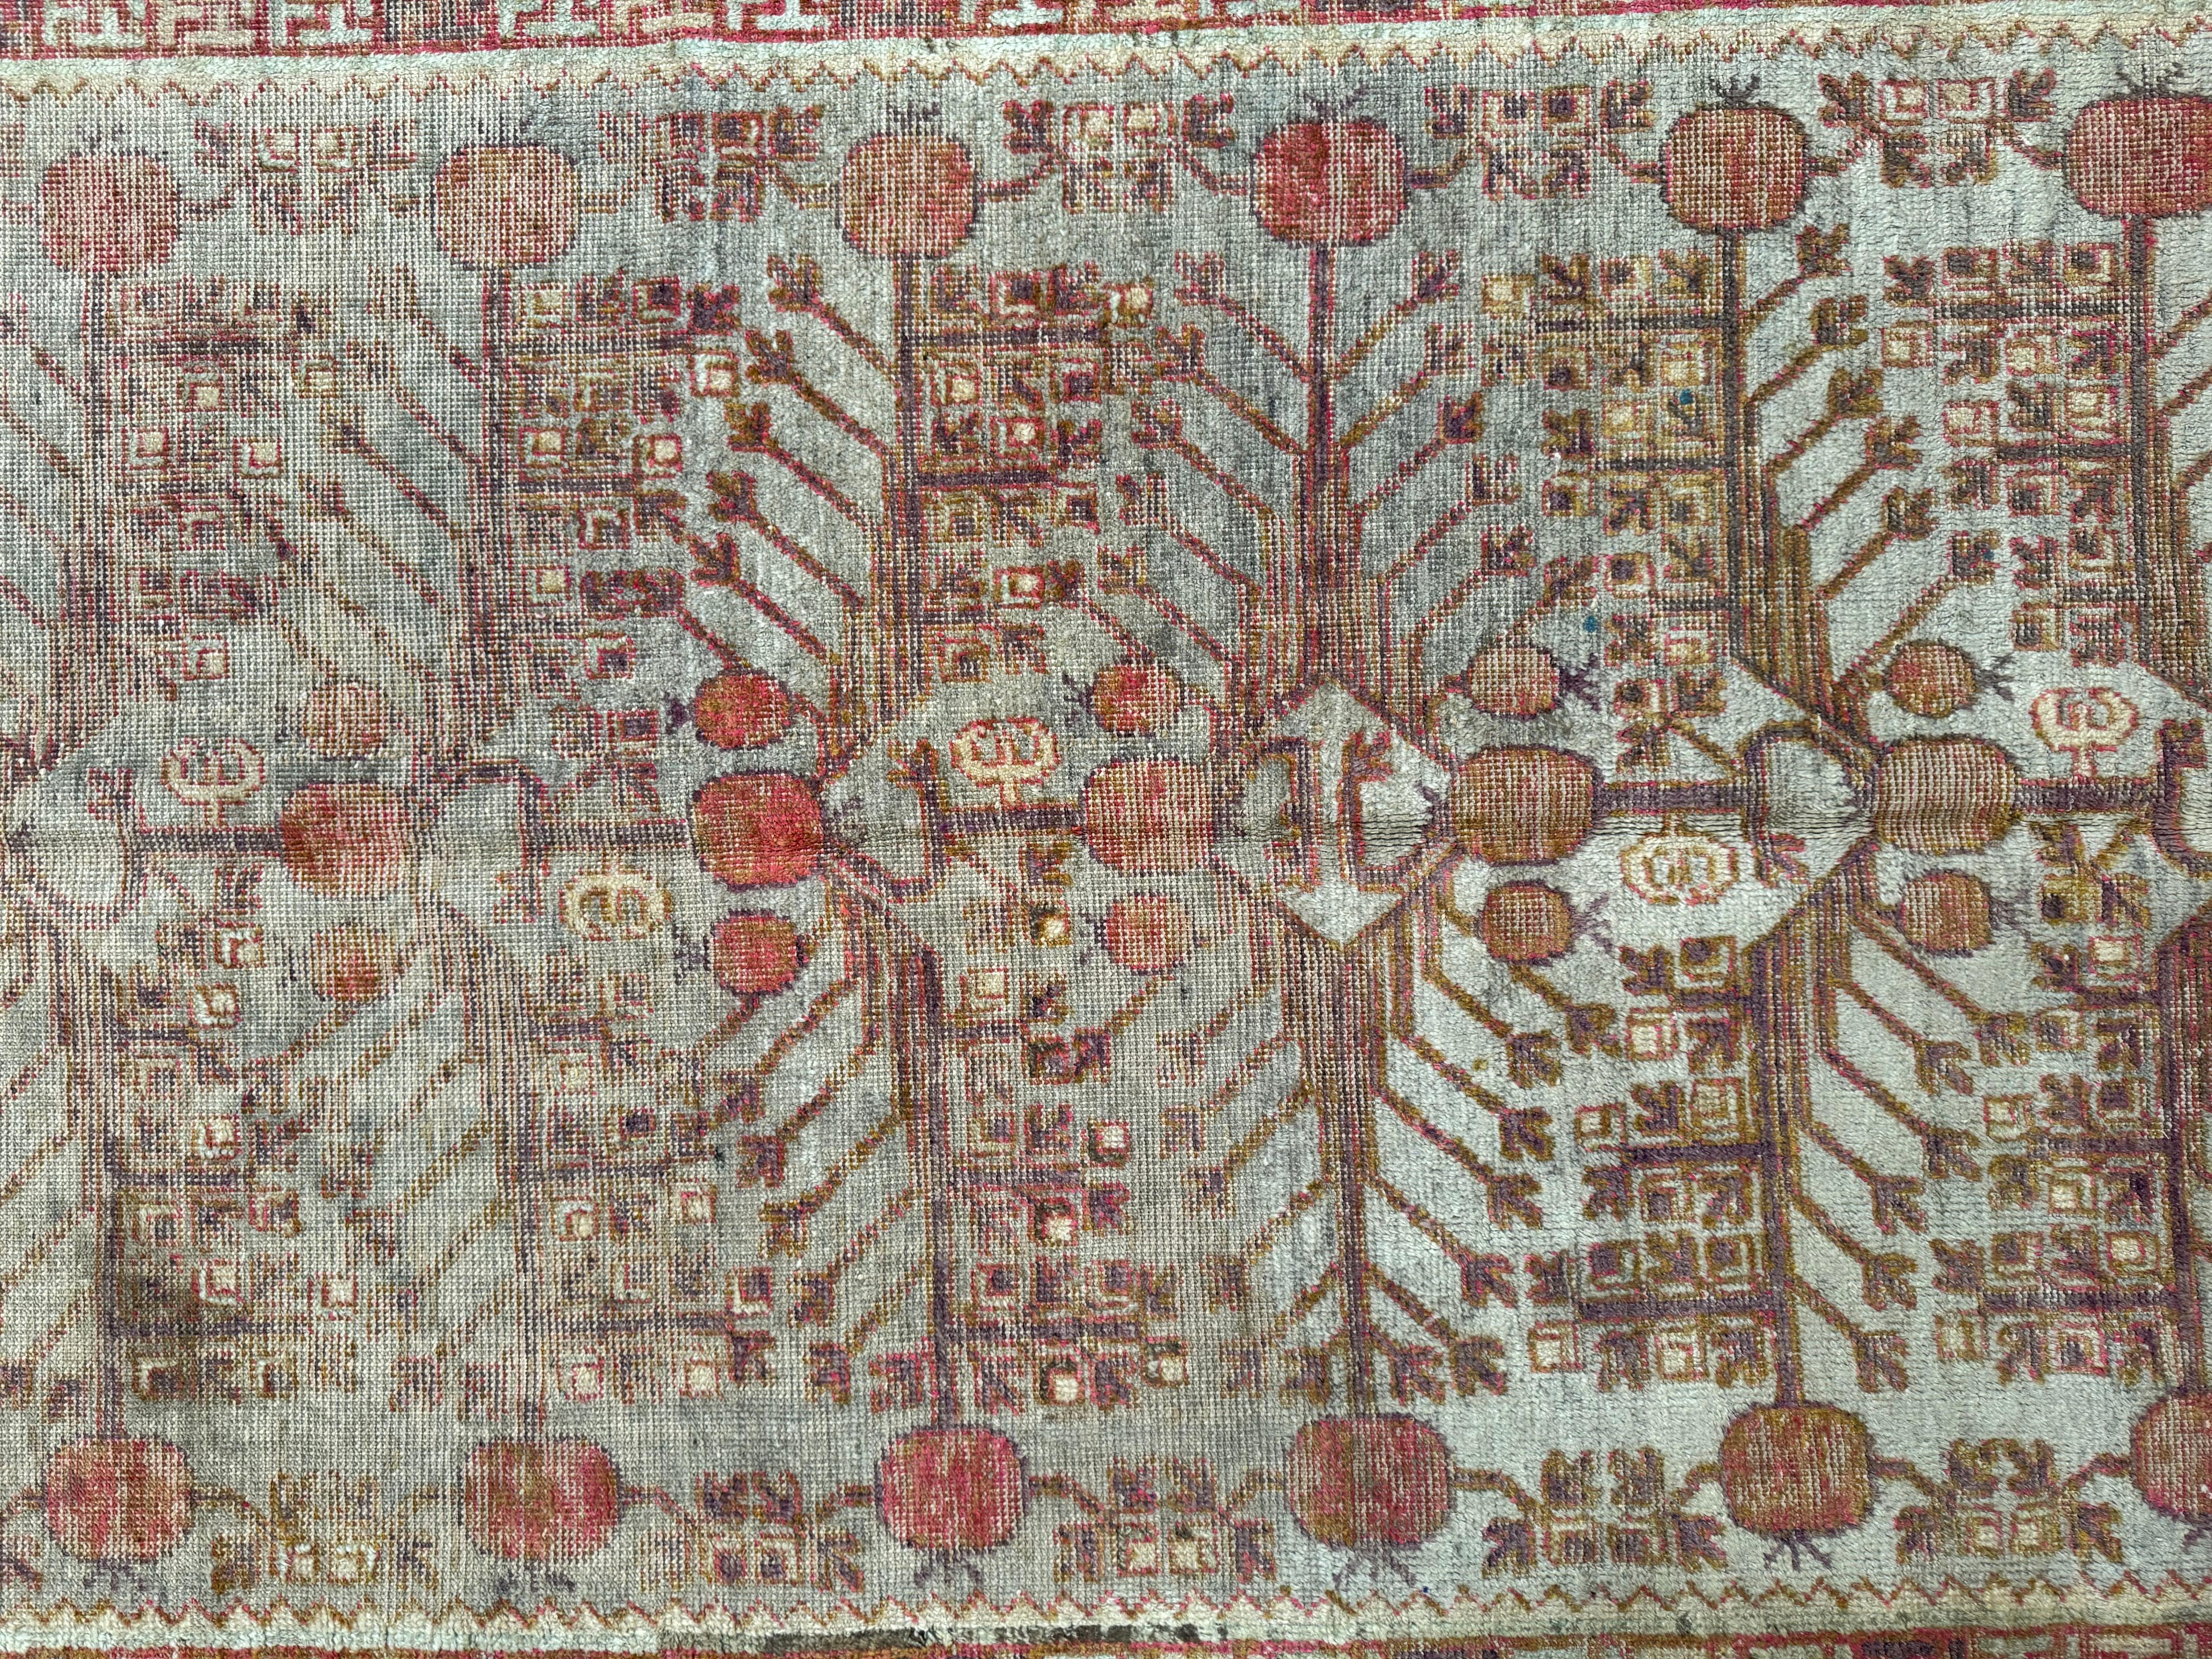 Entdecken Sie zeitlose Schönheit mit diesem antiken Samarkand-Teppich aus dem 19. Jahrhundert, der sich über eine Fläche von 9,9' x 5,0' erstreckt. Die filigranen Motive und klassischen Farben bereichern jedes amerikanische Dekor und bieten eine